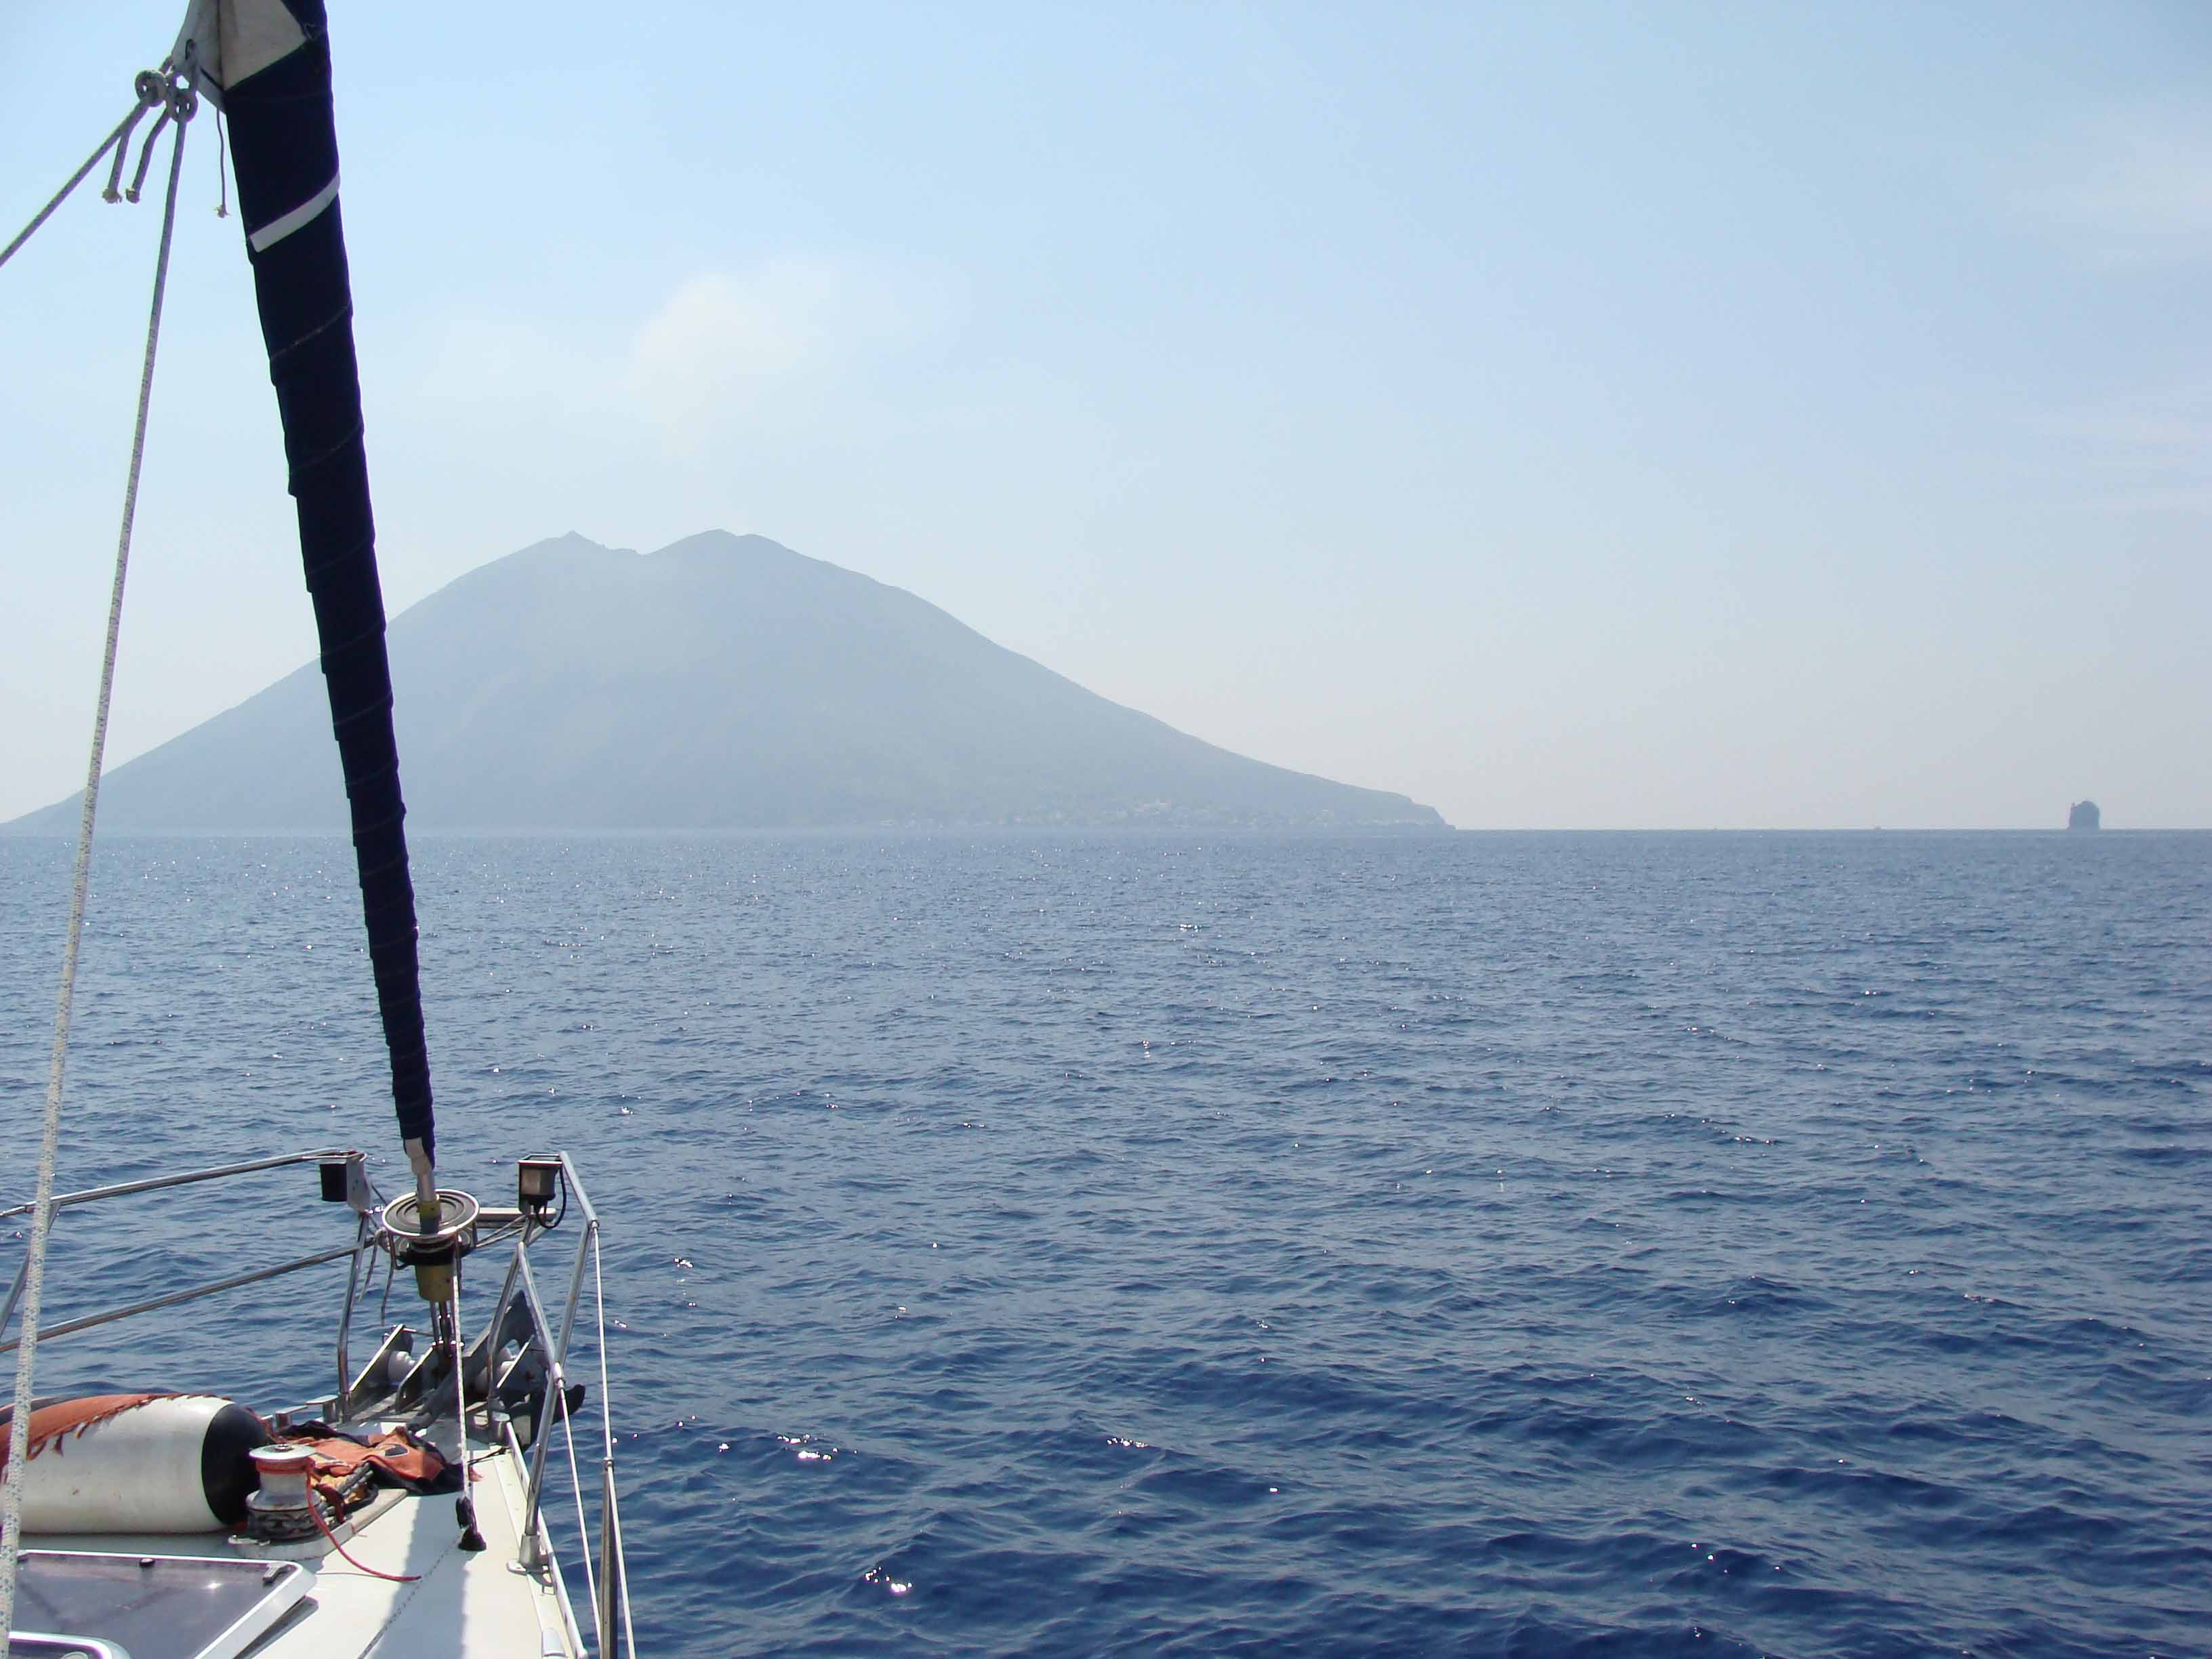 SegeltÃ¶rn in den Liparischen Inseln, Tyrrhenisches Meer, Italien; Stromboli ahoi